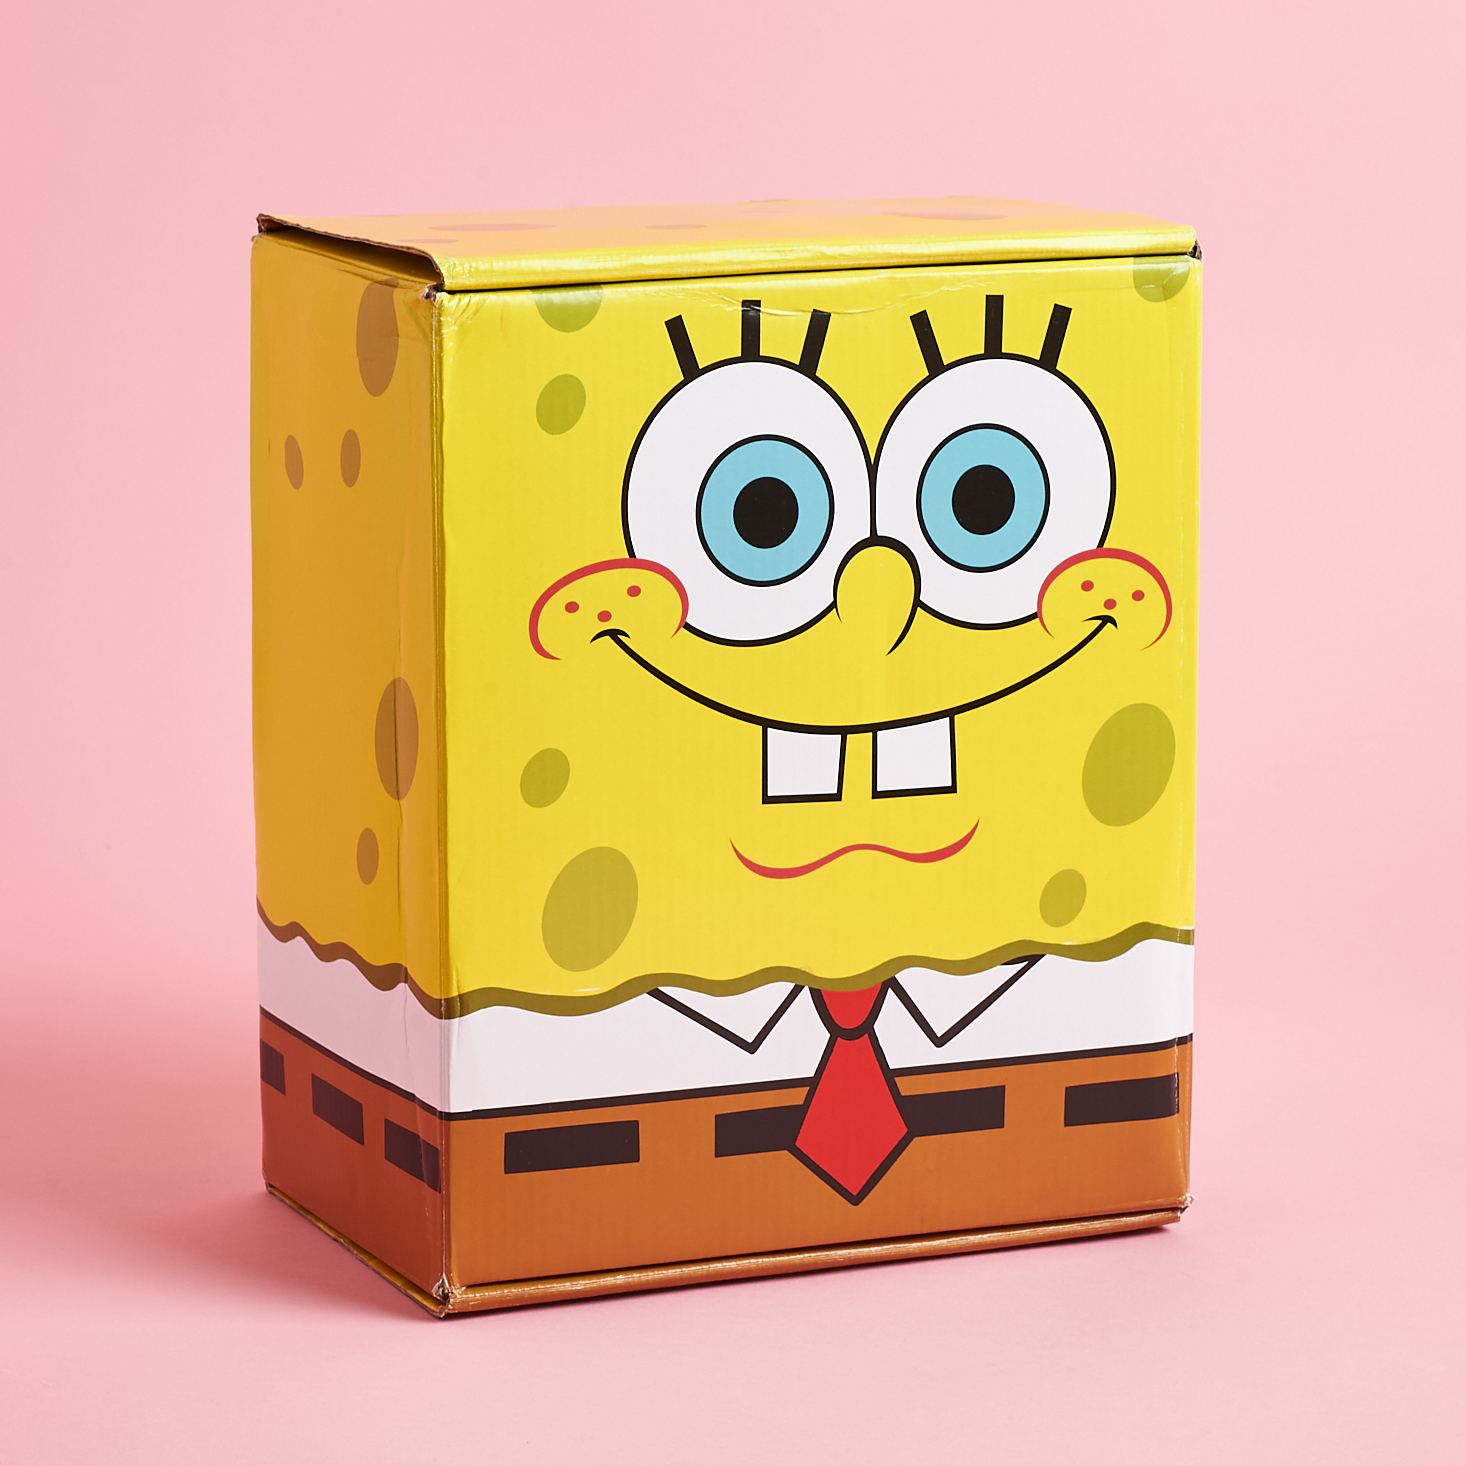 Spongebob Squarepants Bikini Bottom Spring 2022 Spoiler #1 and Spoiler #2